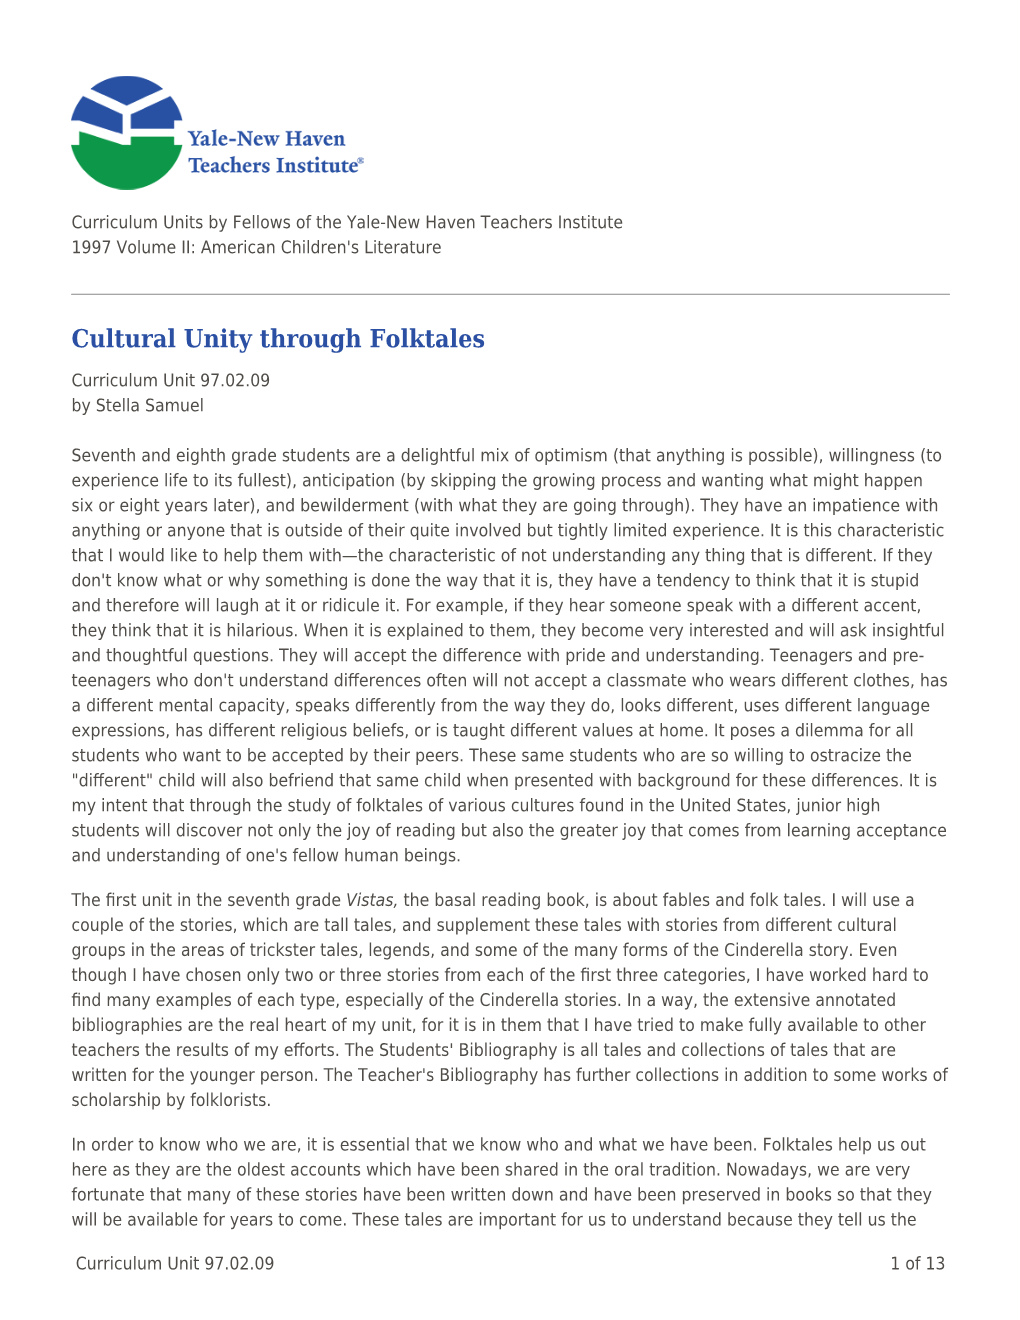 Cultural Unity Through Folktales